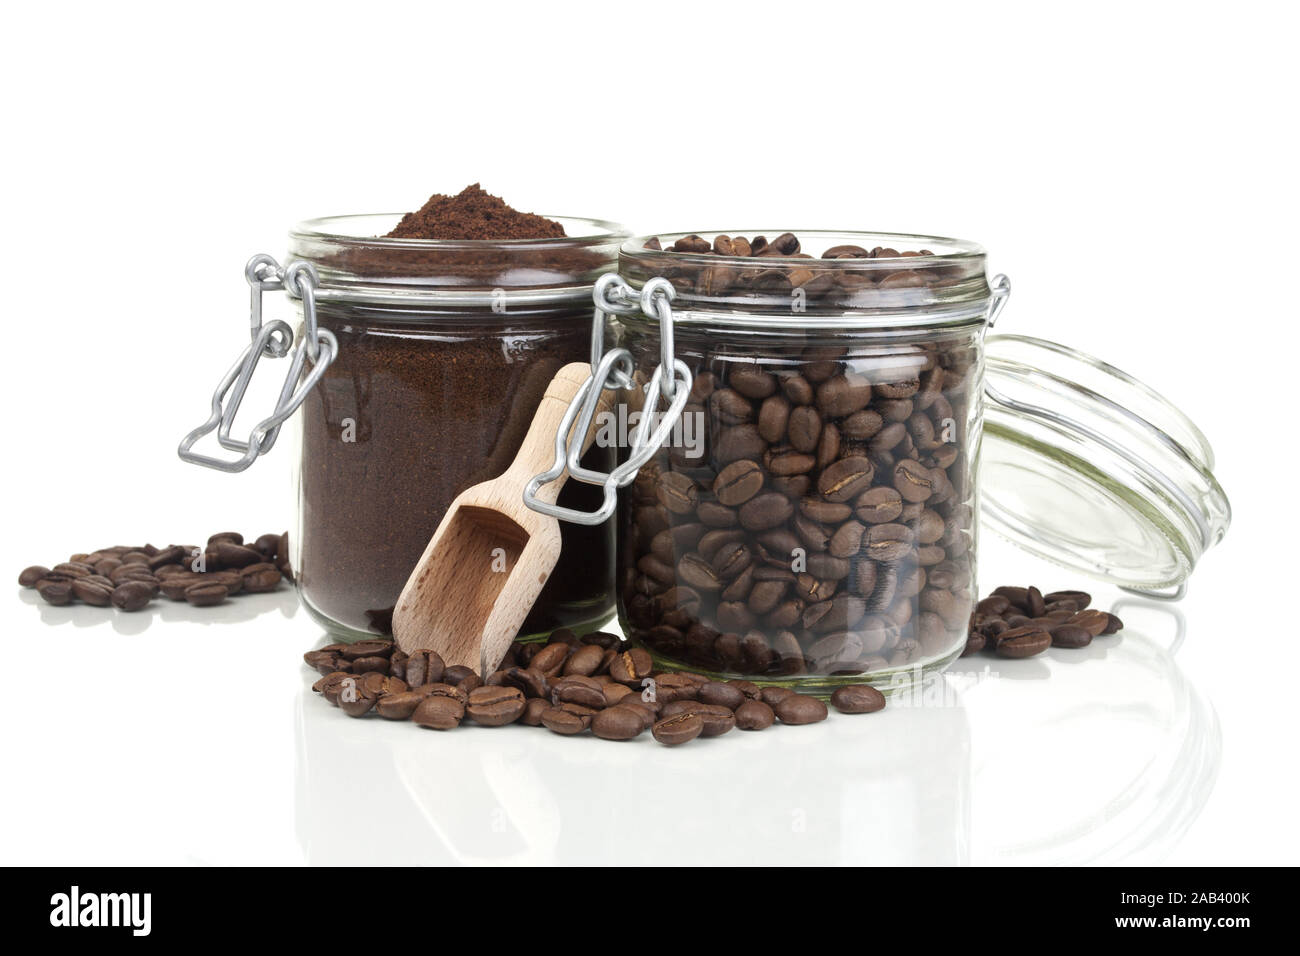 Frisch gemahlener Kaffee und Kaffeebohnen in Glaeser |Freshly ground coffee and coffee beans in glasses| Stock Photo